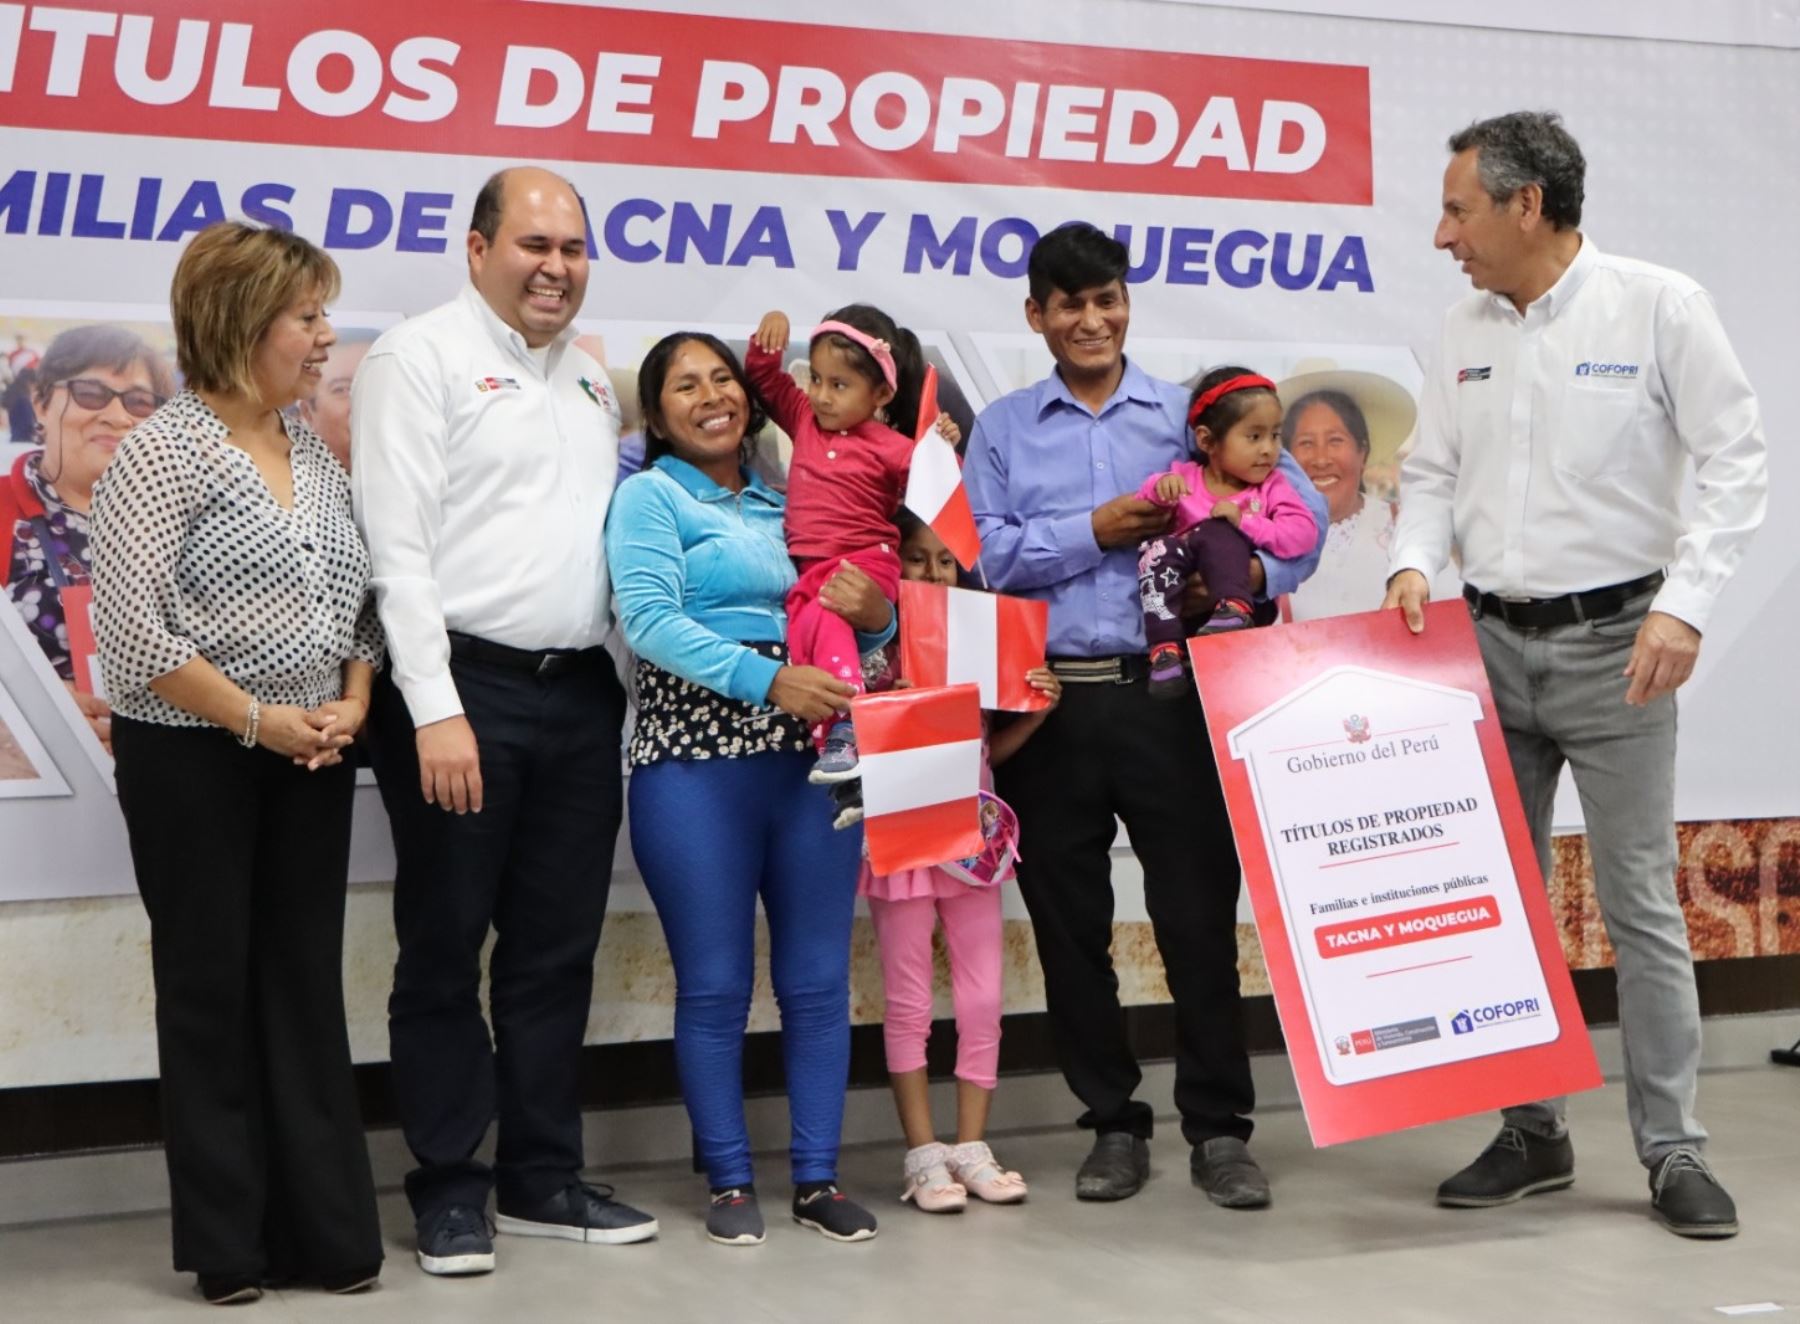 Tacna y Moquegua: Cofopri entrega titulación de 2,397 lotes para familias e instituciones